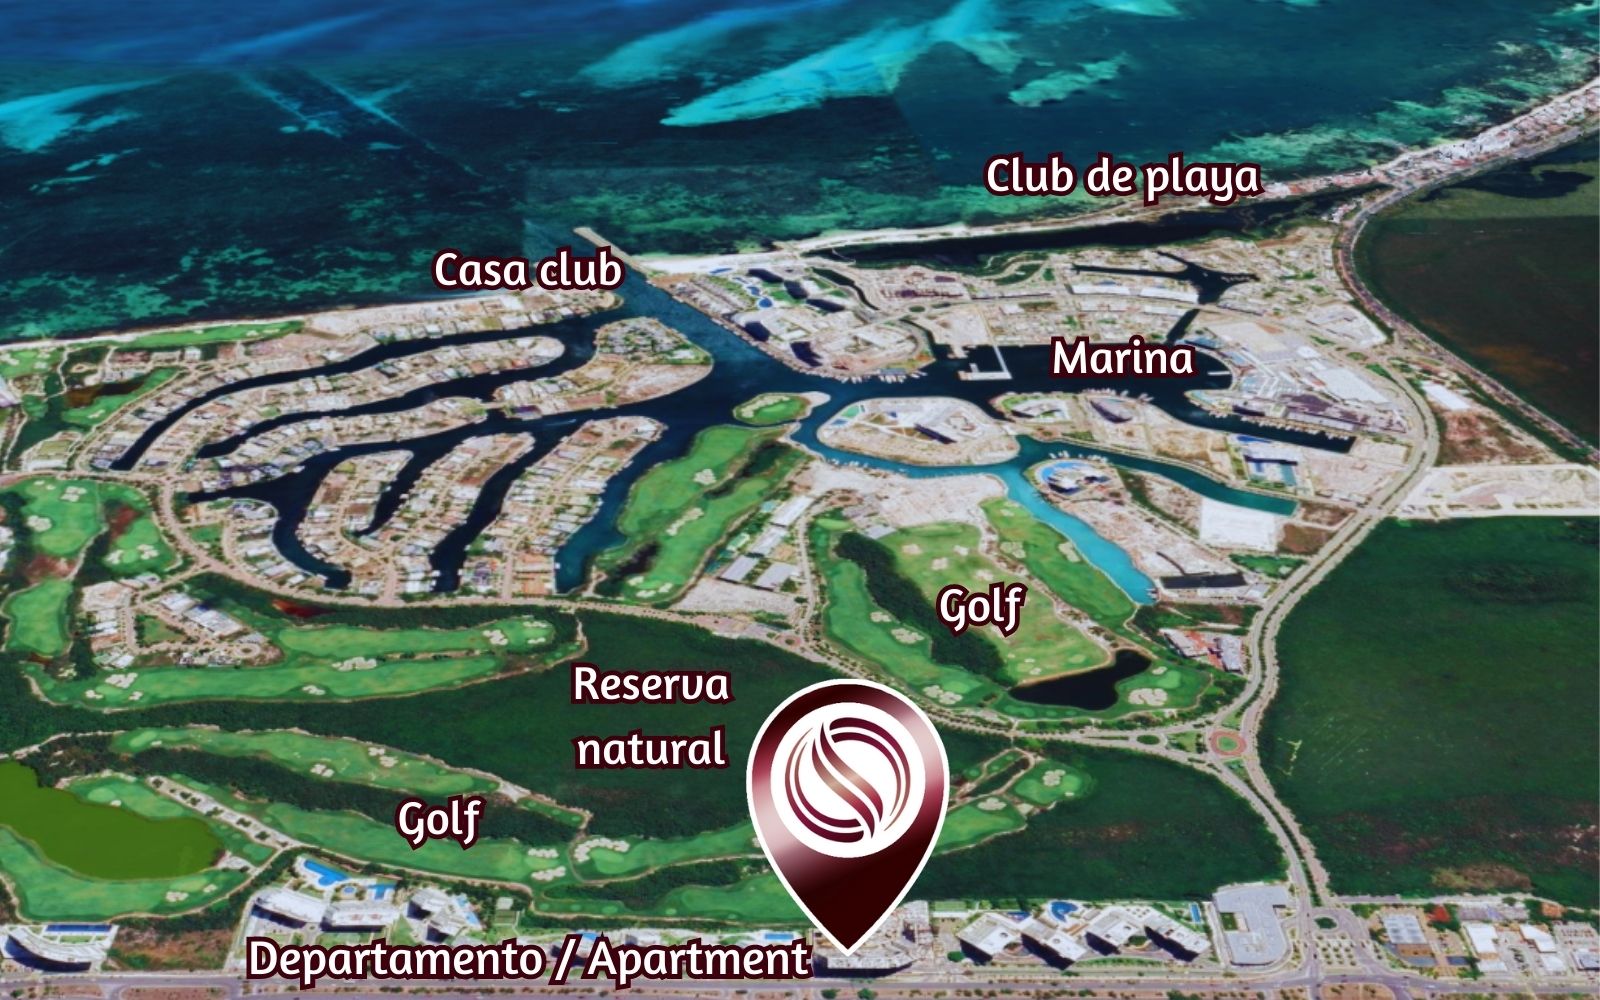 Condo con Club de playa frente al mar, Alberca, gym y Salón de eventos, en   Costa mujeres, Cancun.